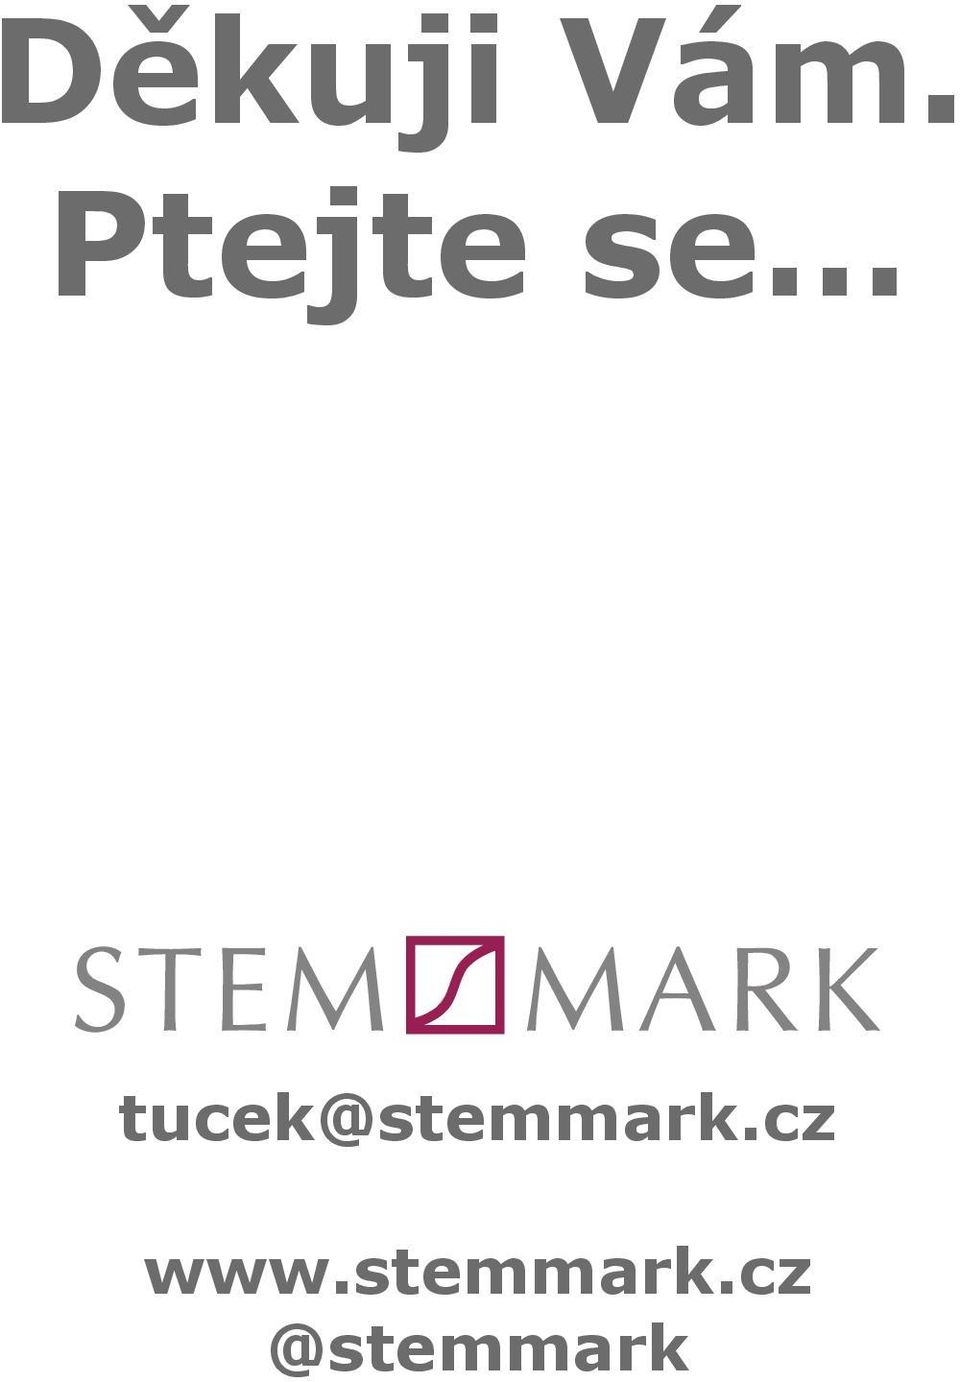 tucek@stemmark.